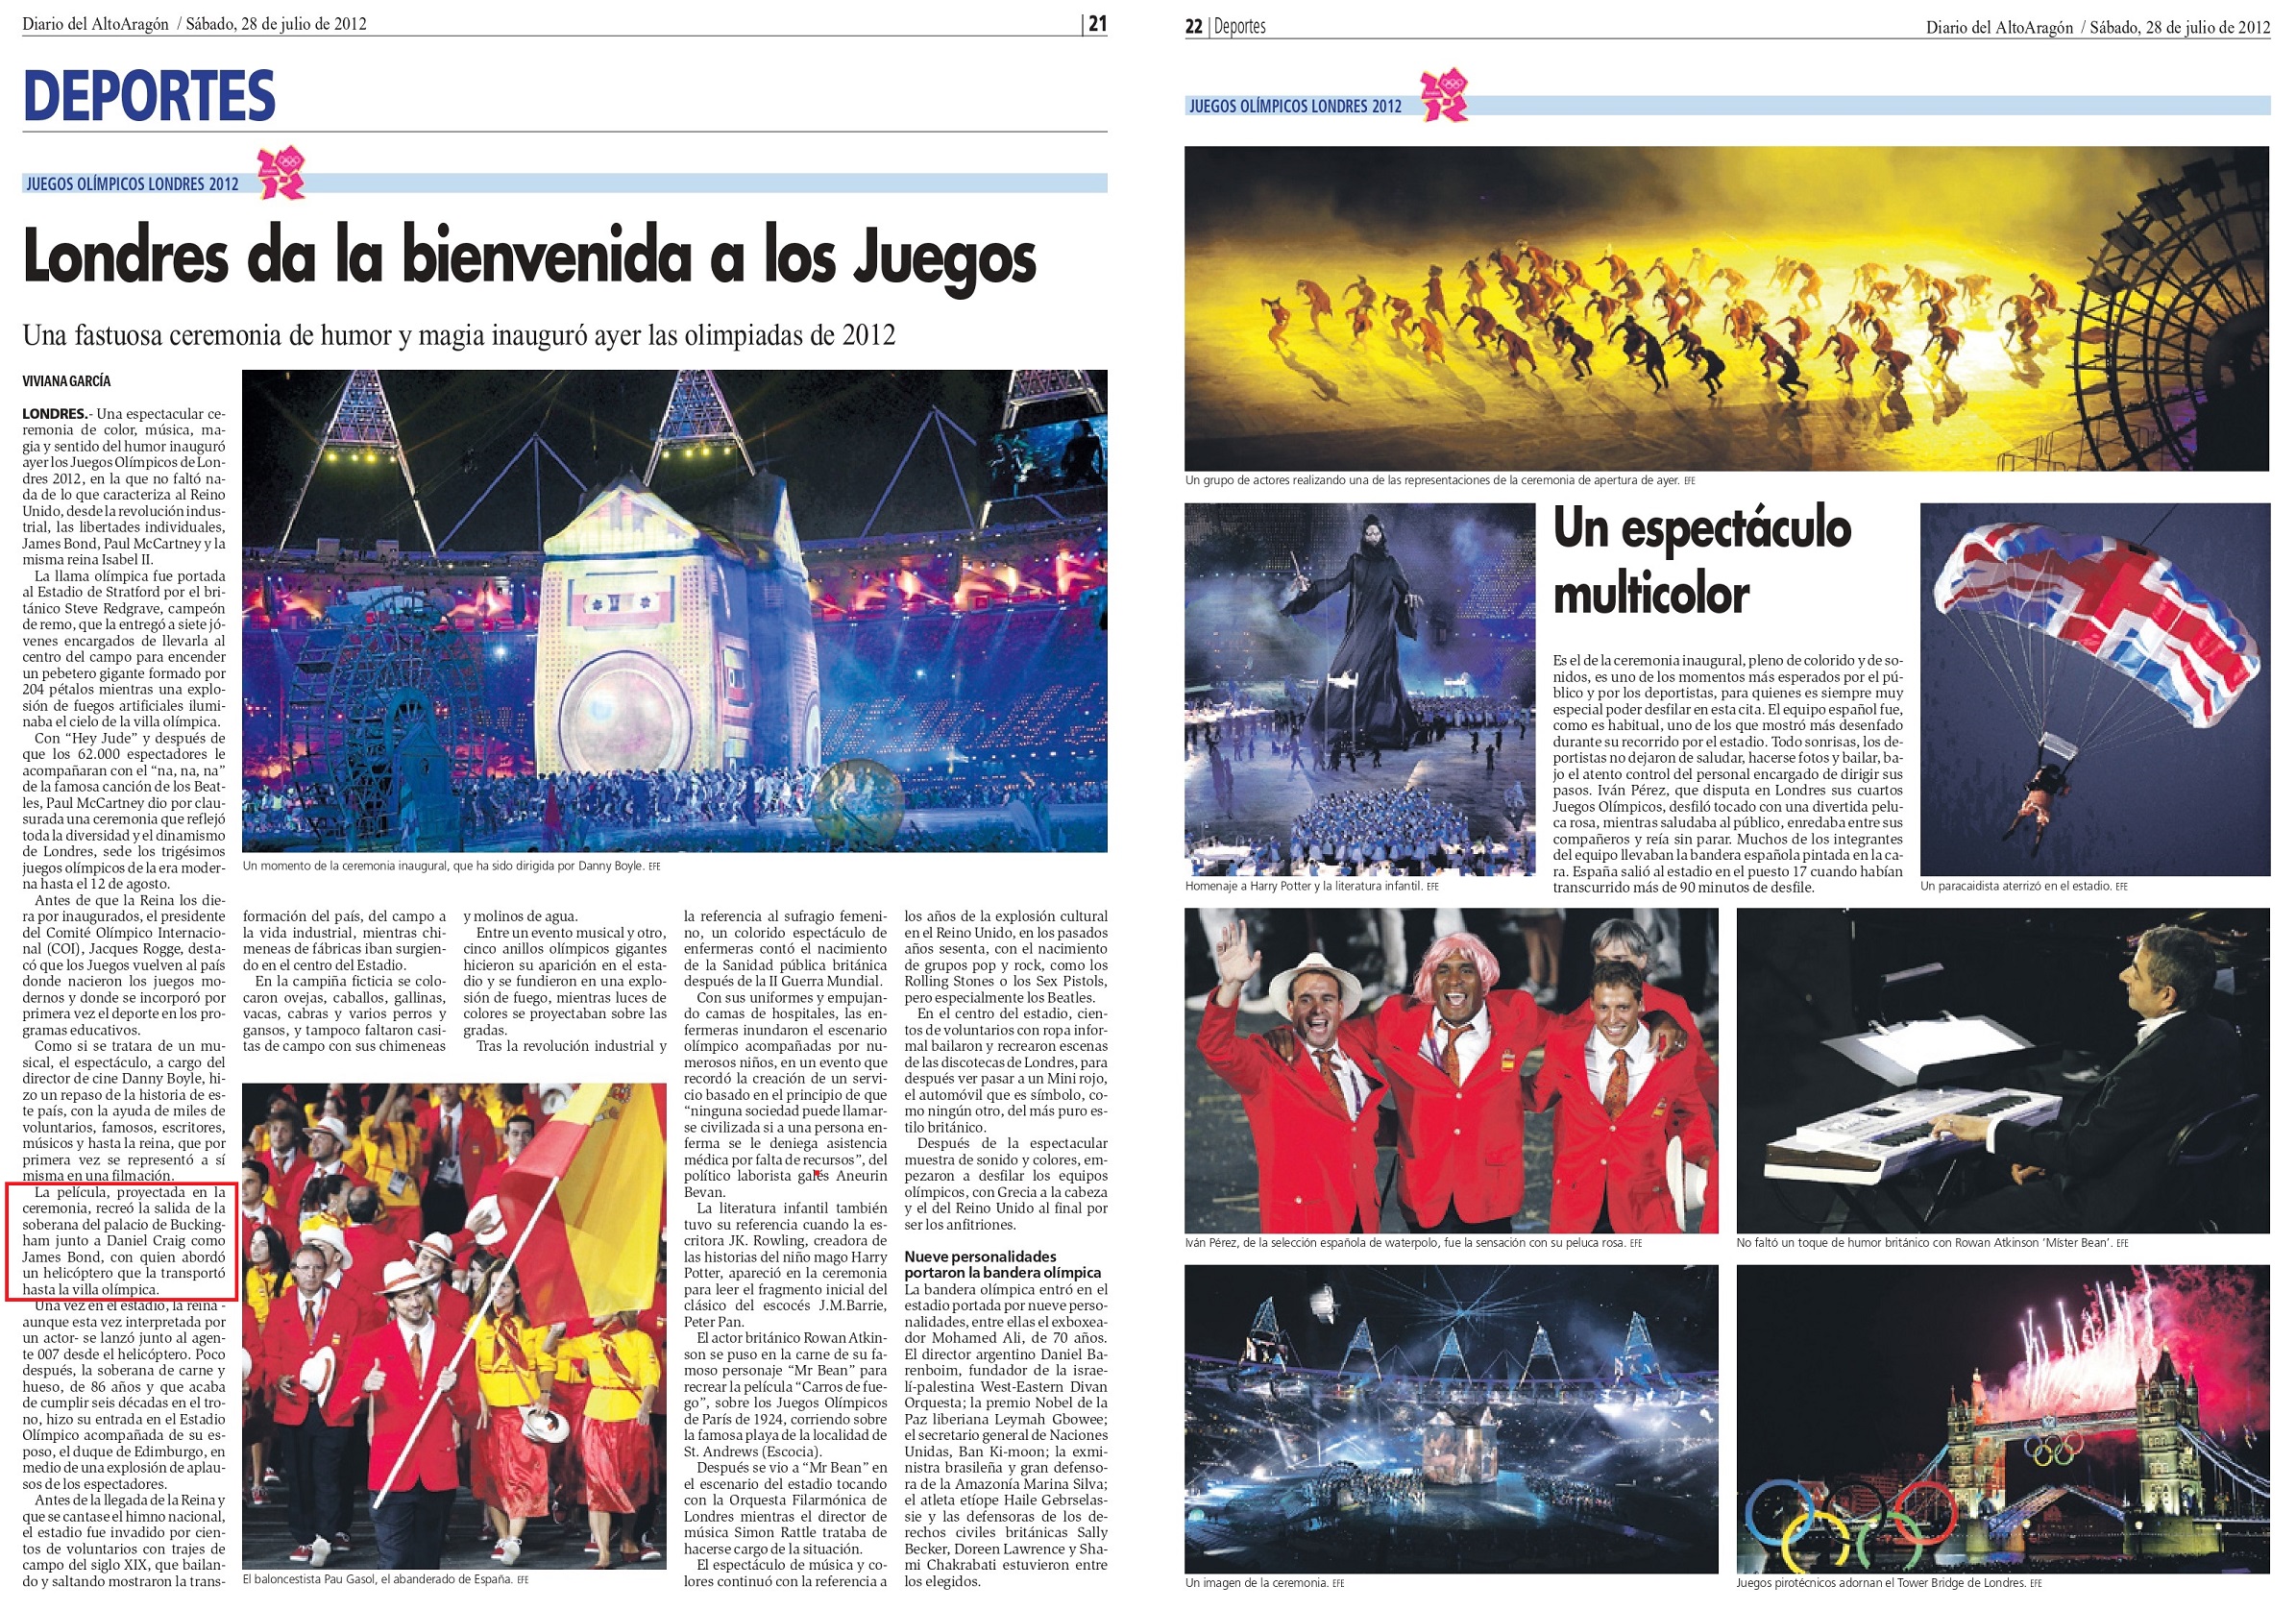 Olimpiadas 2012 07 28 Diario del Alto Aragon Huesca 21 22